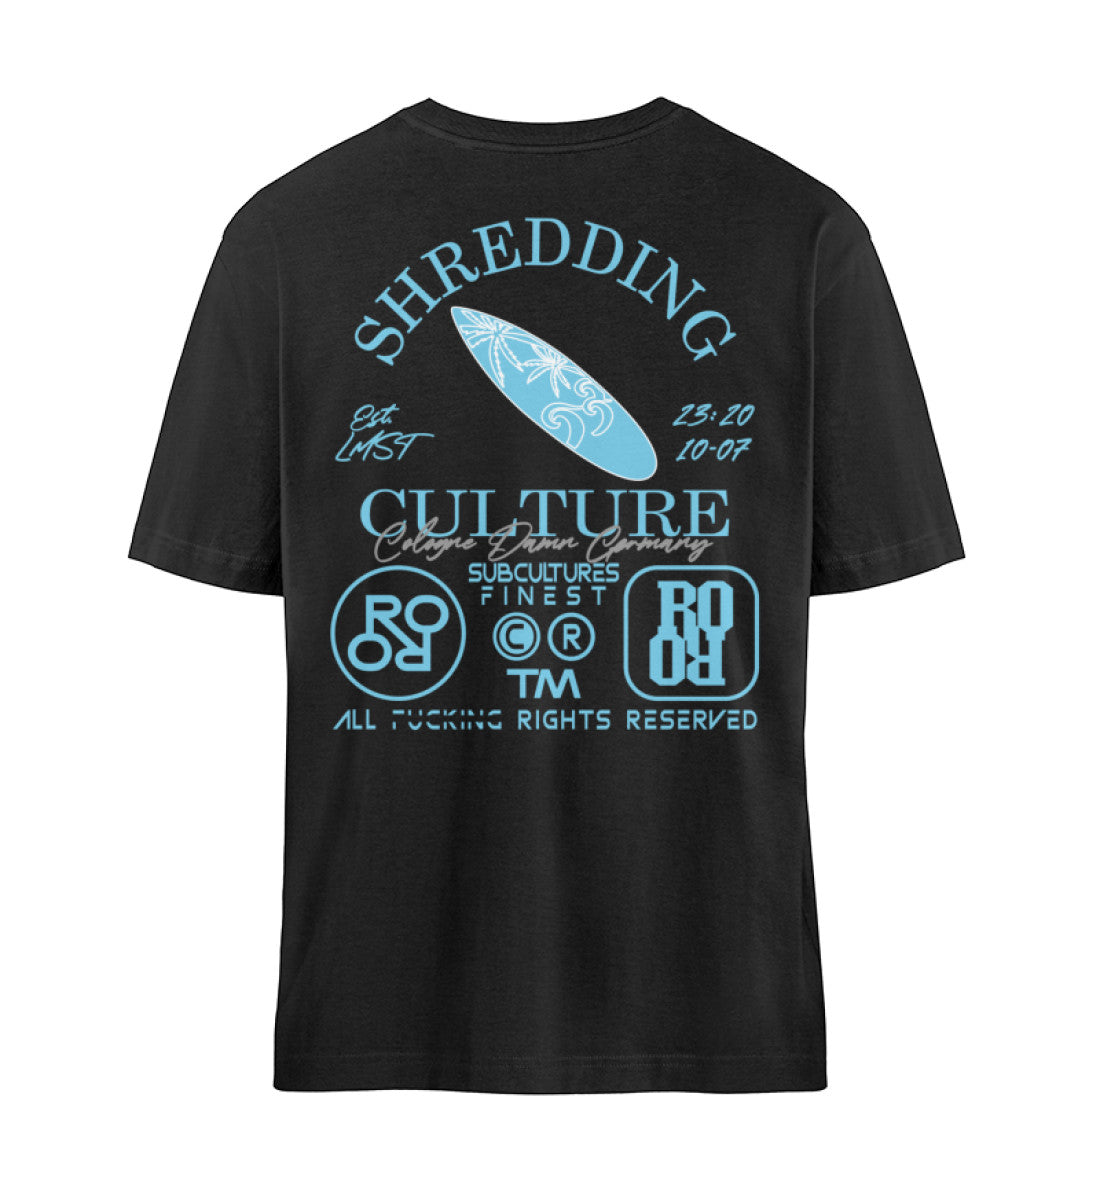 Schwarzes T-Shirt Unisex Relaxed Fit für Frauen und Männer bedruckt mit dem Design der Roger Rockawoo Kollektion surf shredding community